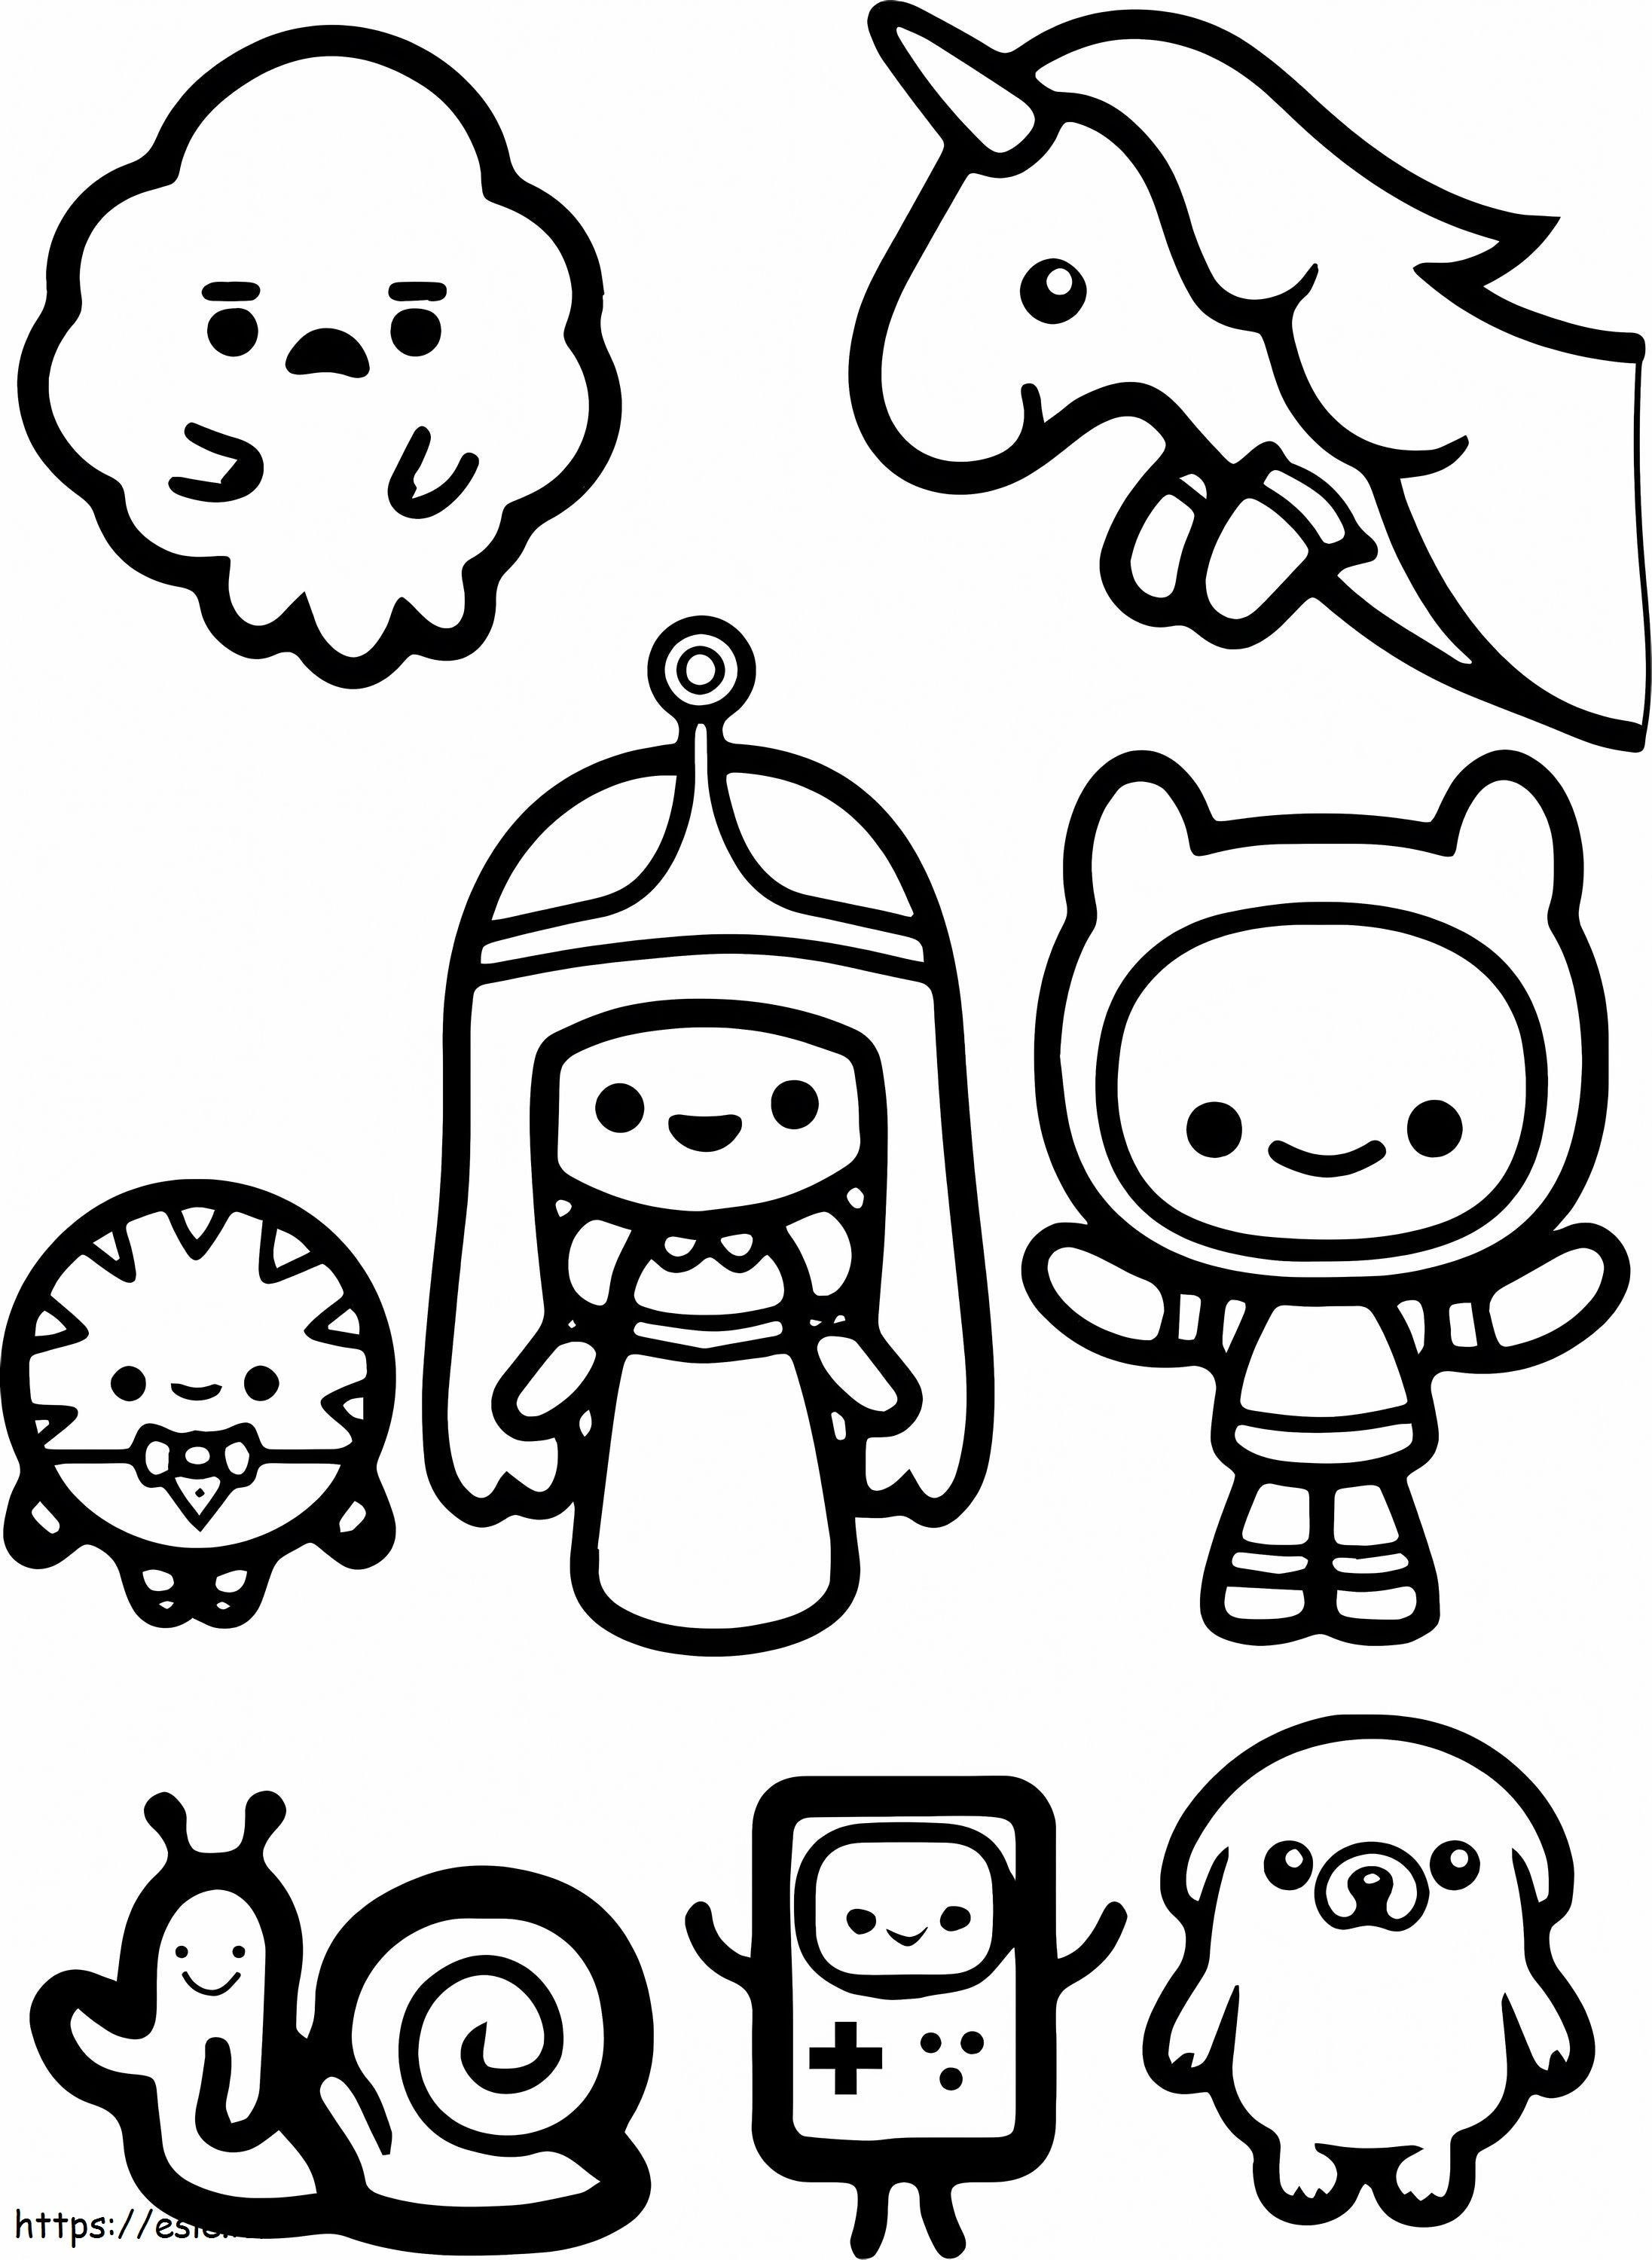 Personaje Chibi Adventure Time de colorat